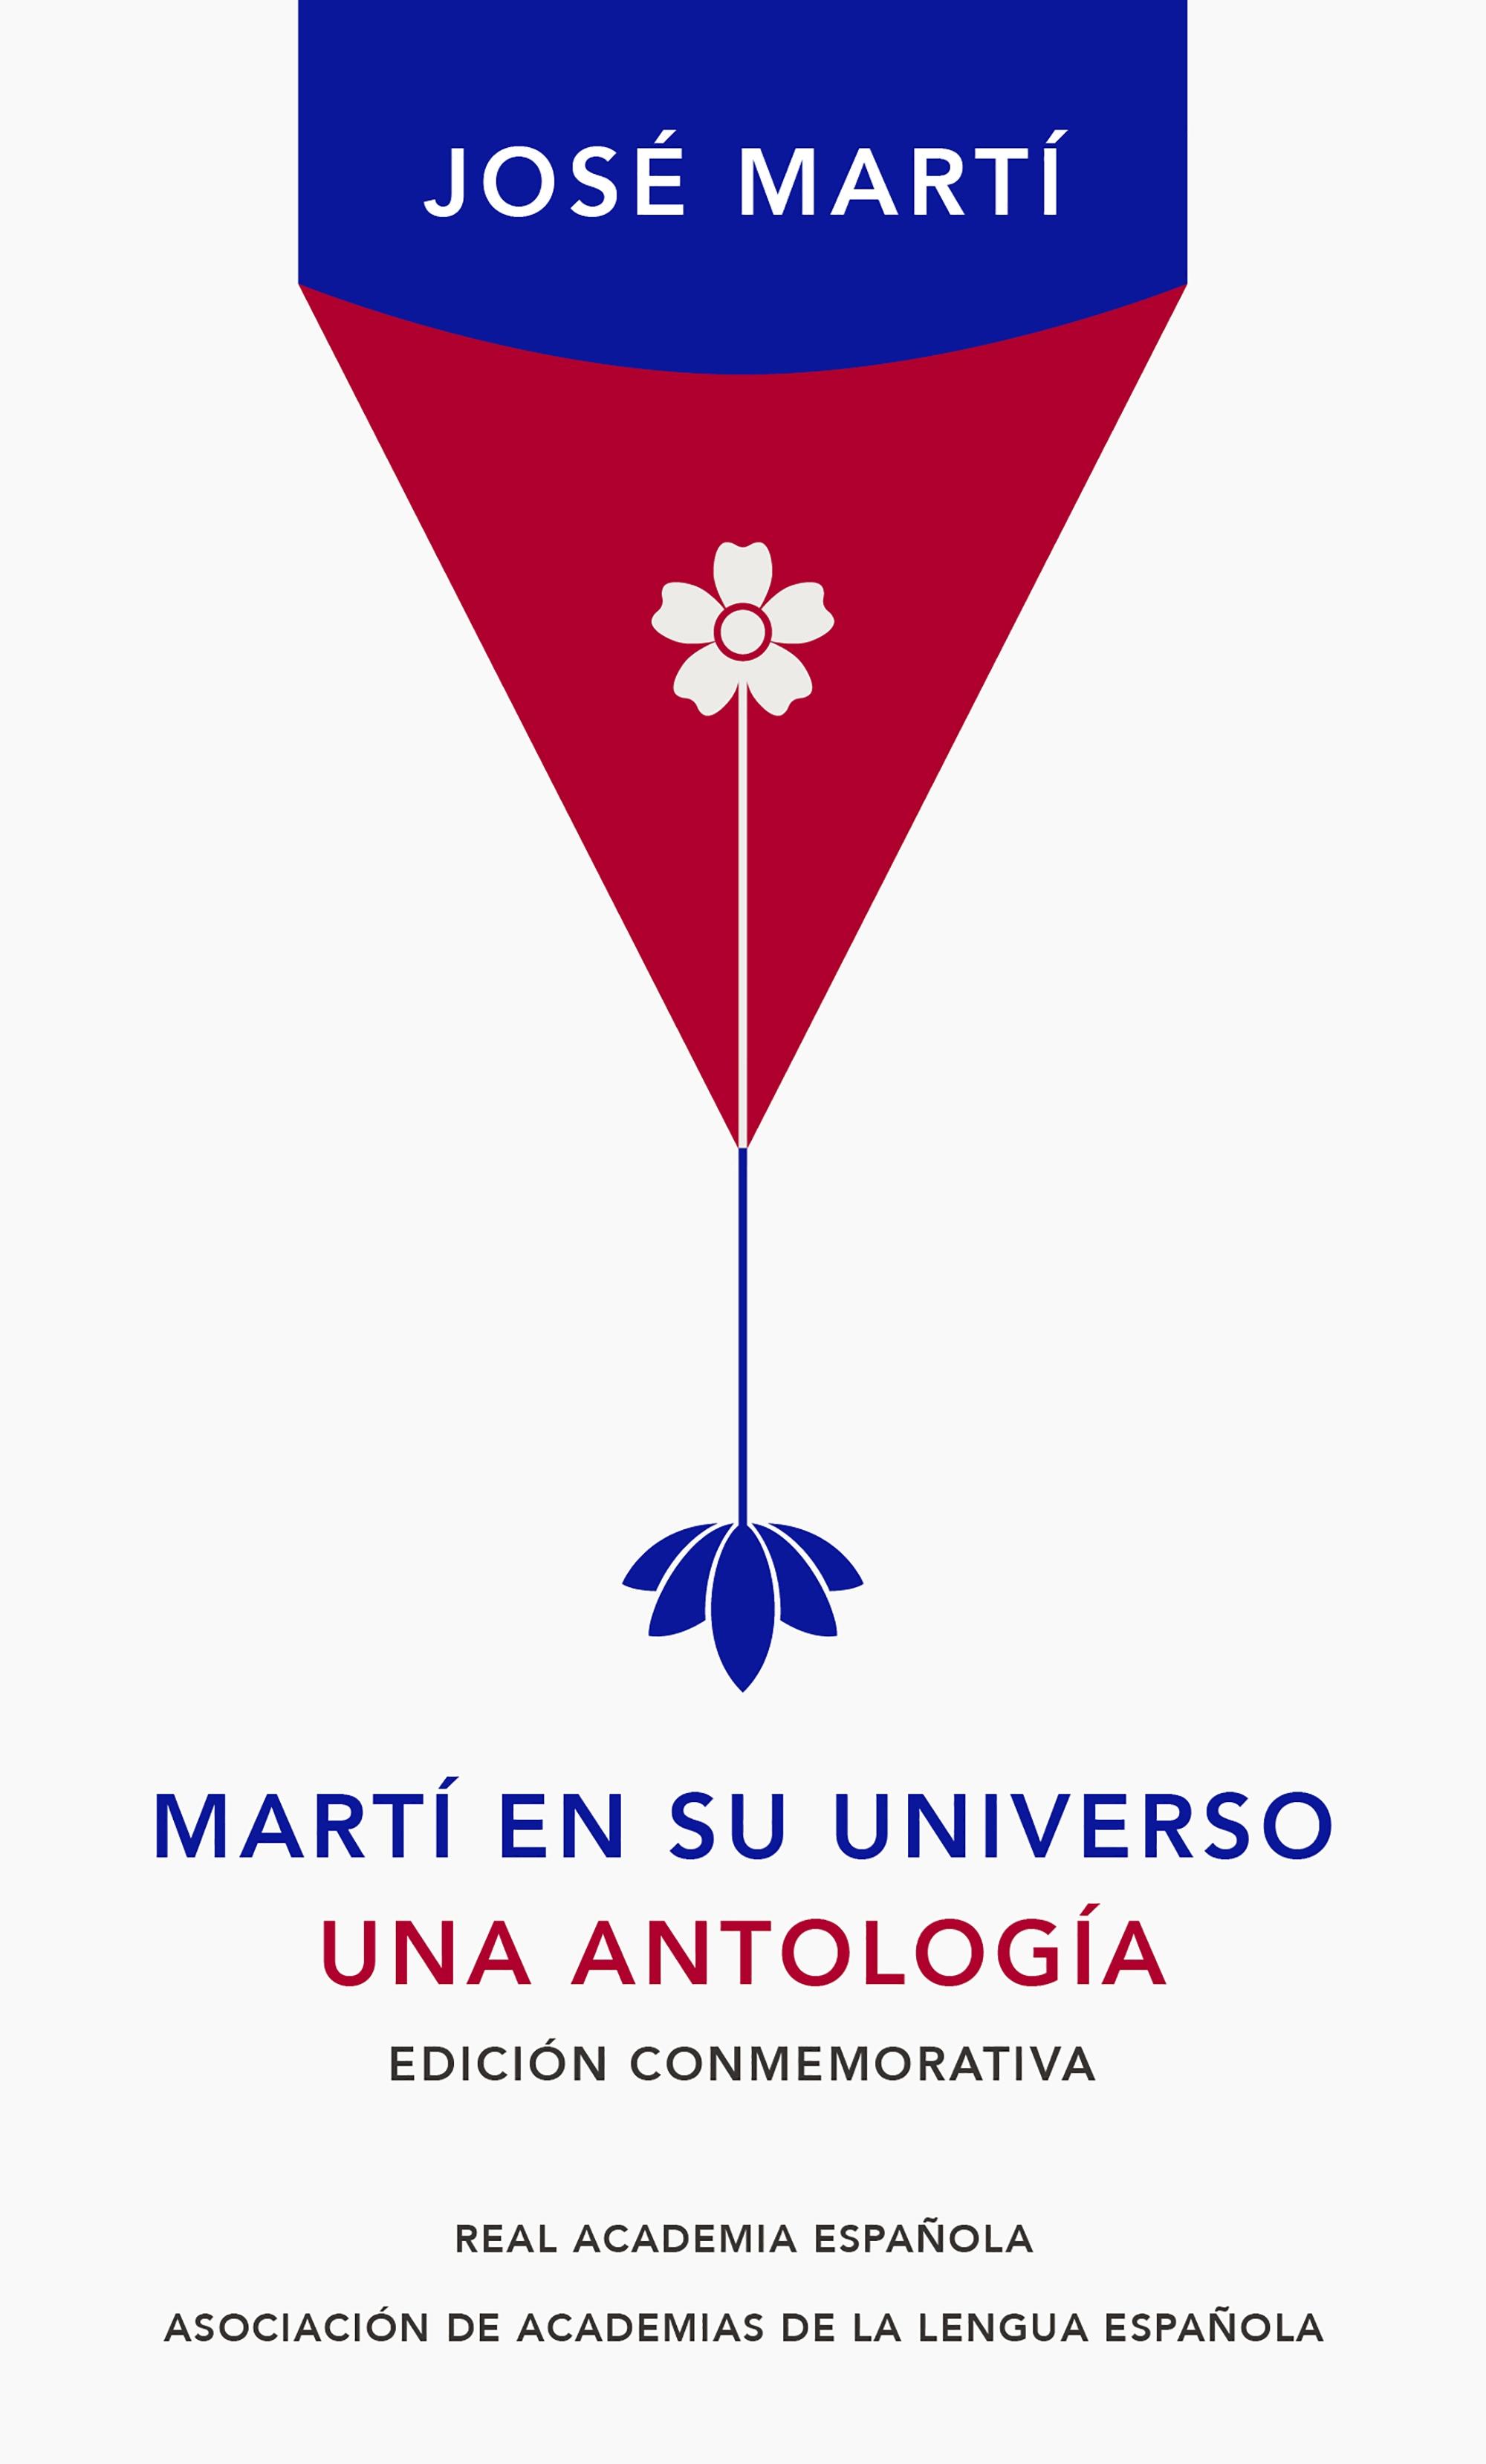 Martí en su Universo "Una Antología"